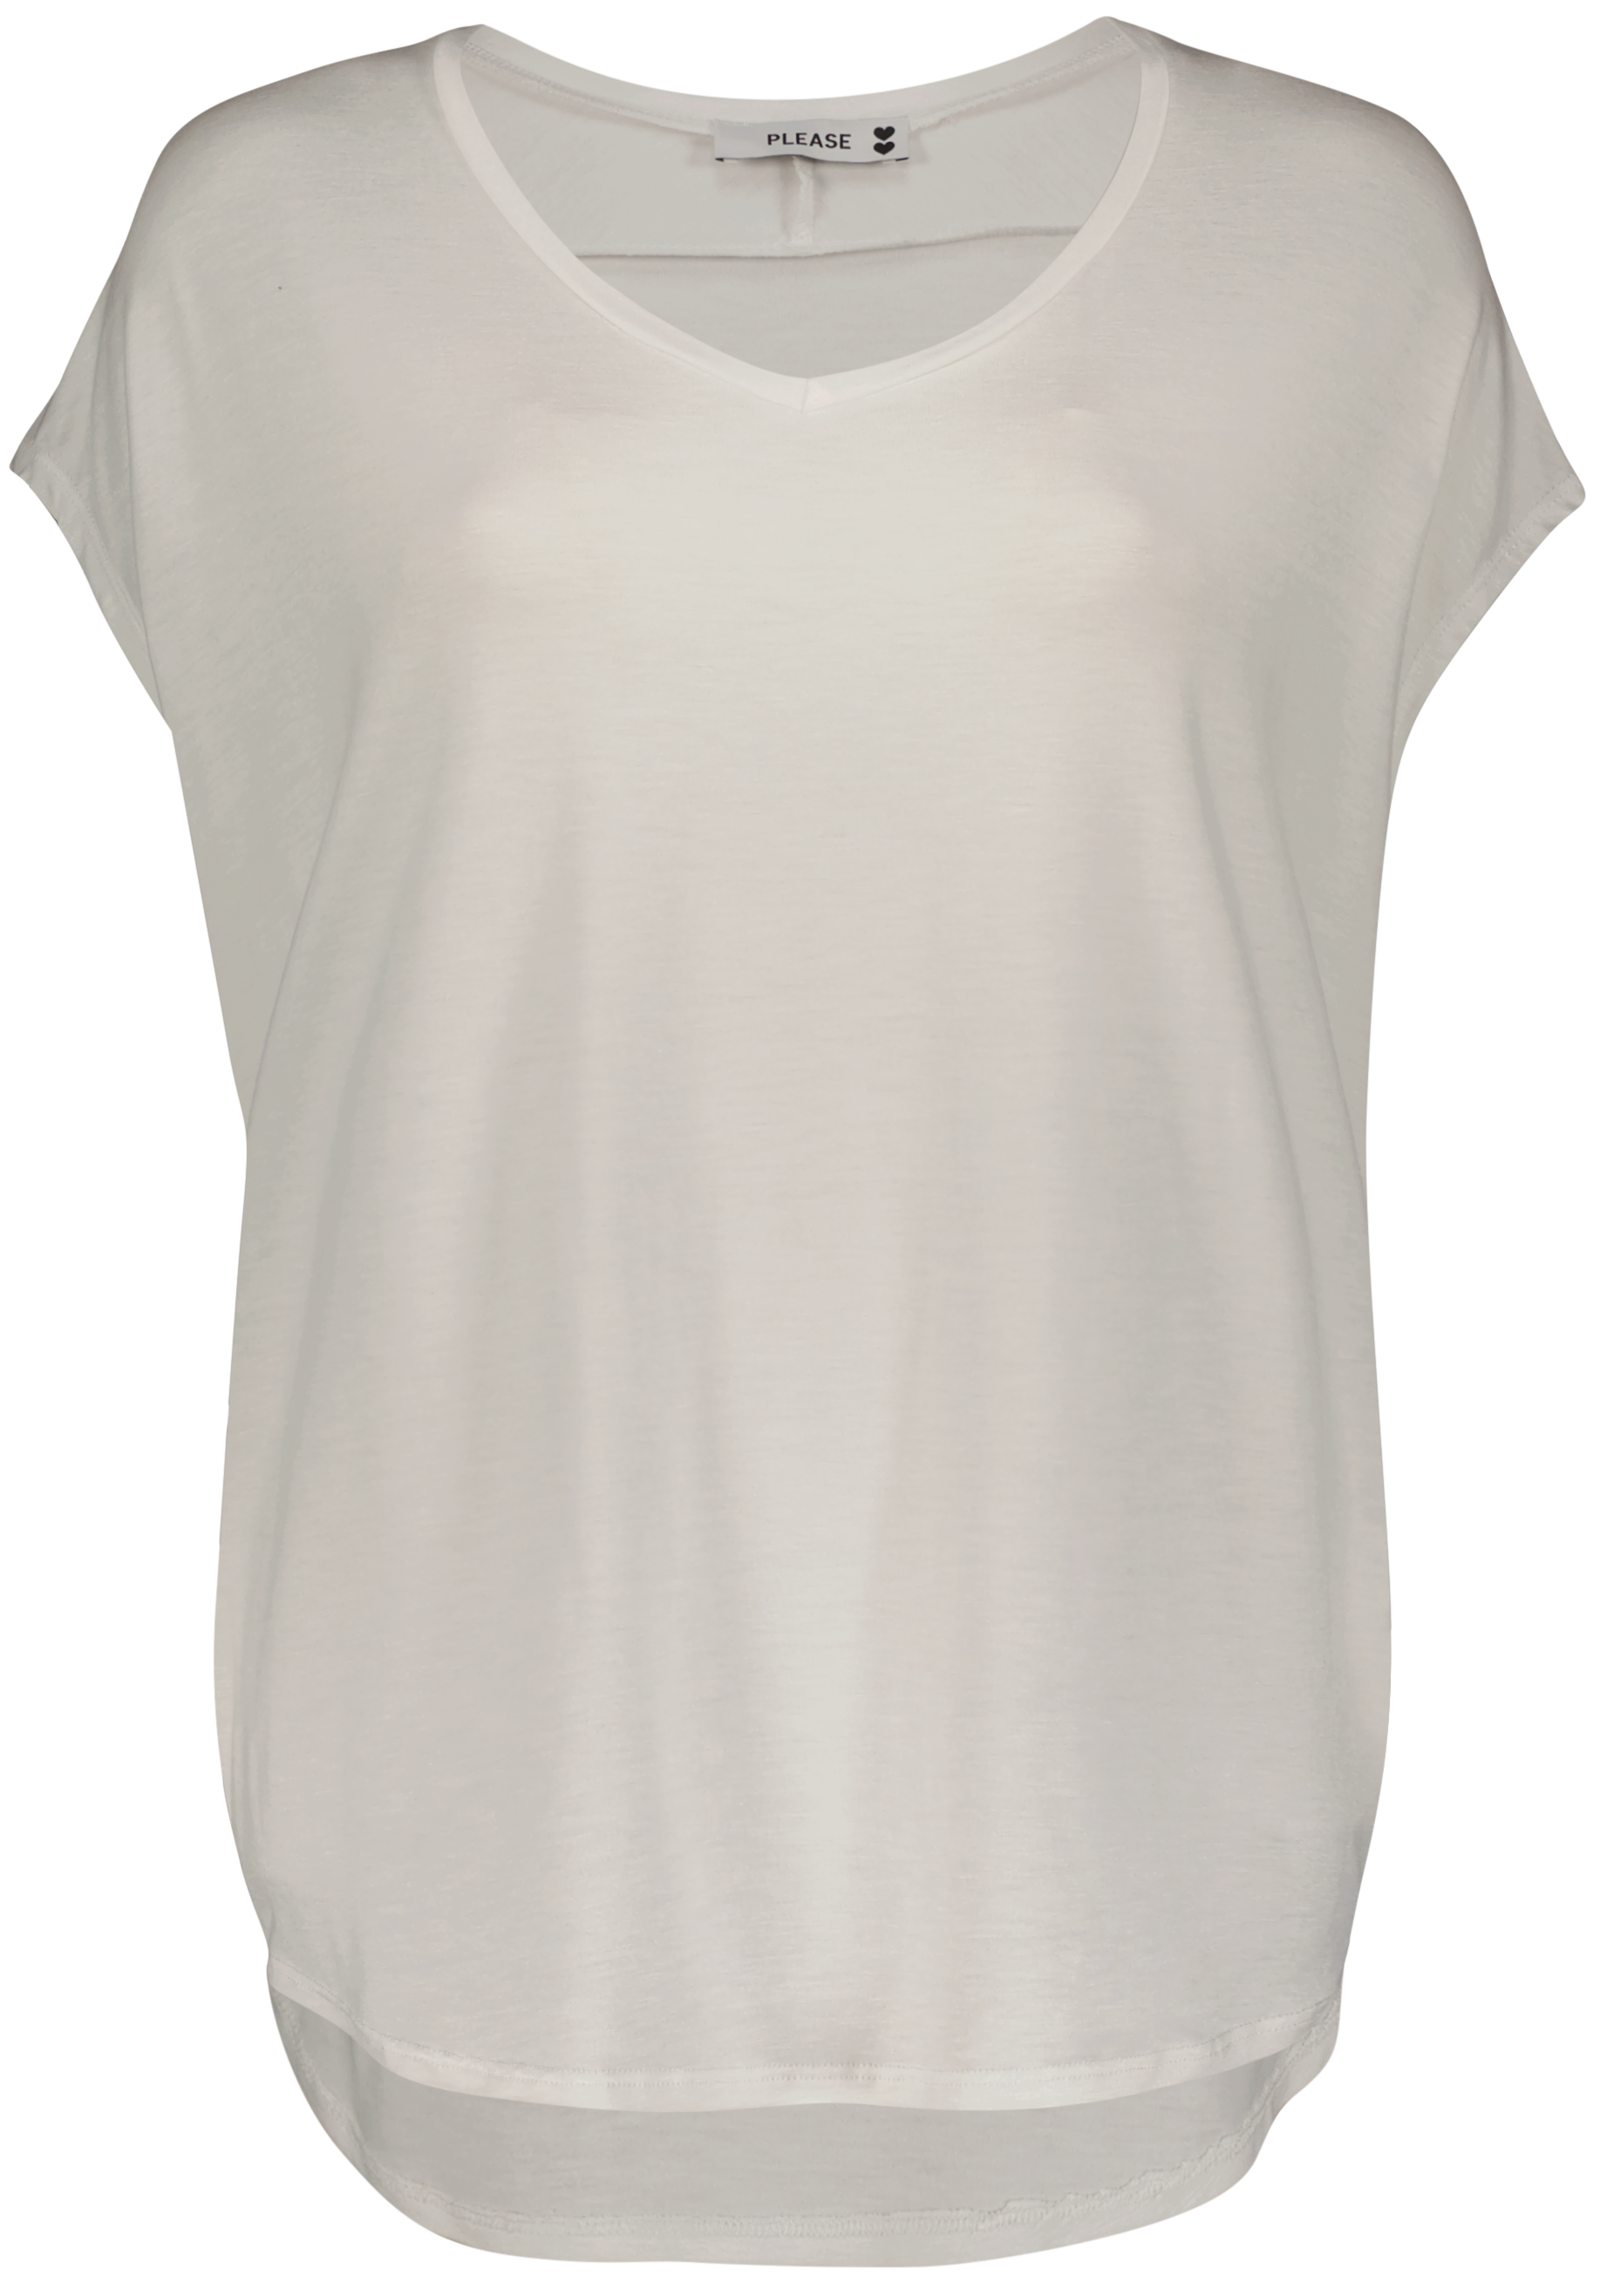 Shirt T0MYATF000 1100 Bianco